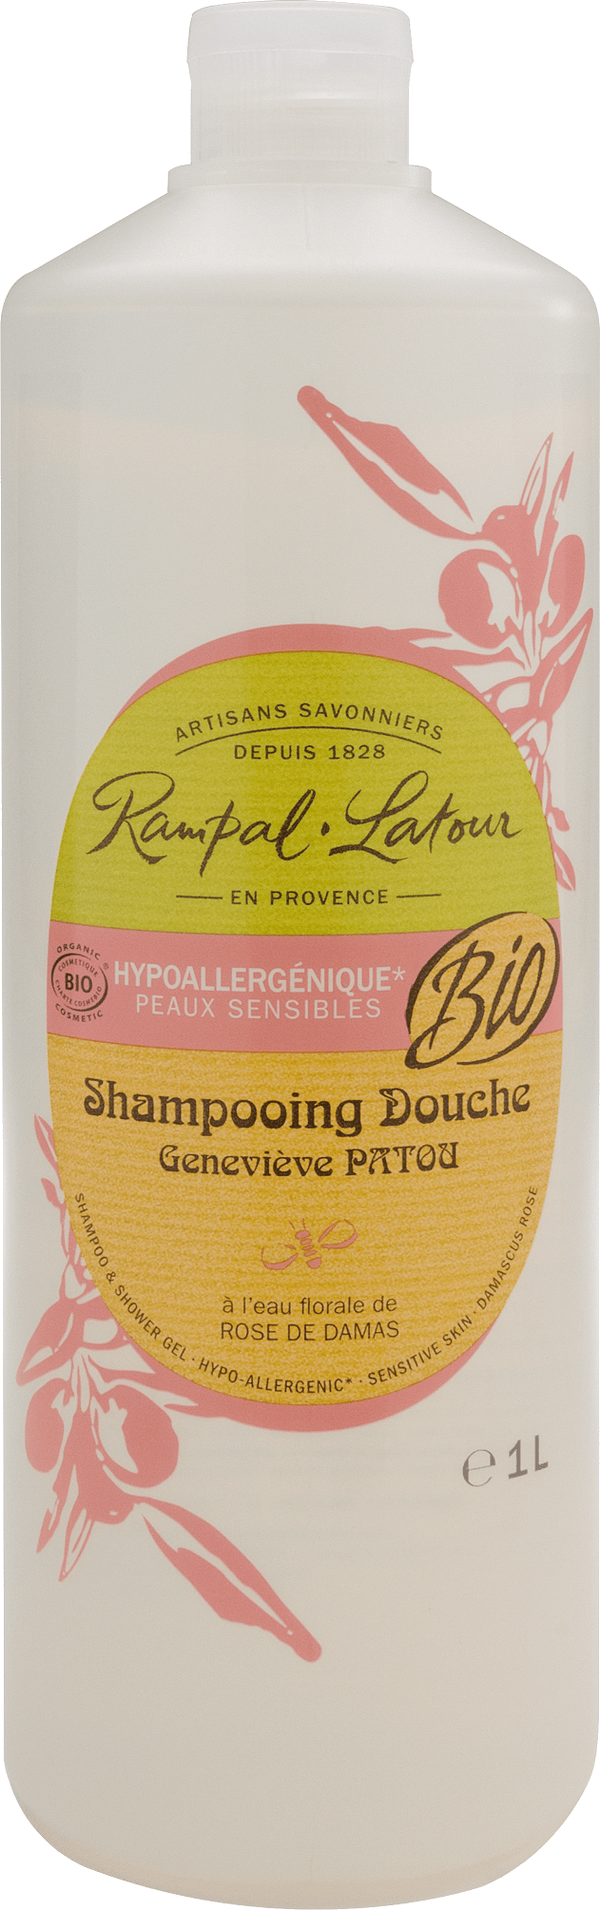 Bio Dusch-Shampoo Damaskus Rose (hypoallergen) 1 Liter - Rampal Latour